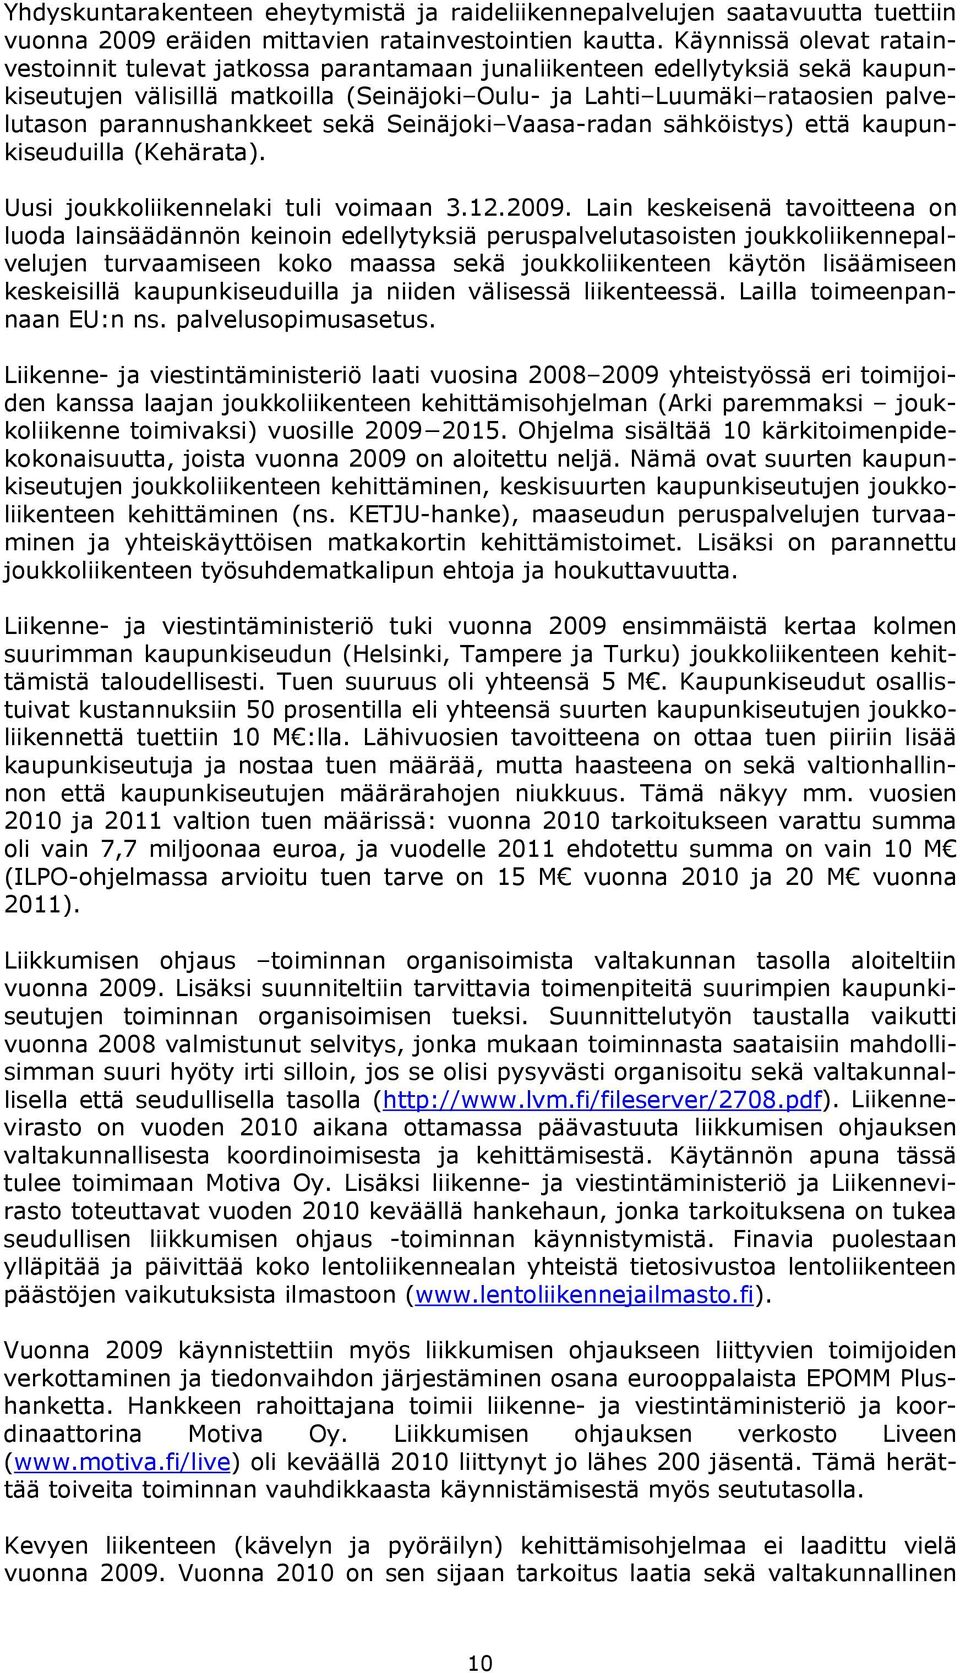 parannushankkeet sekä Seinäjoki Vaasa-radan sähköistys) että kaupunkiseuduilla (Kehärata). Uusi joukkoliikennelaki tuli voimaan 3.12.2009.